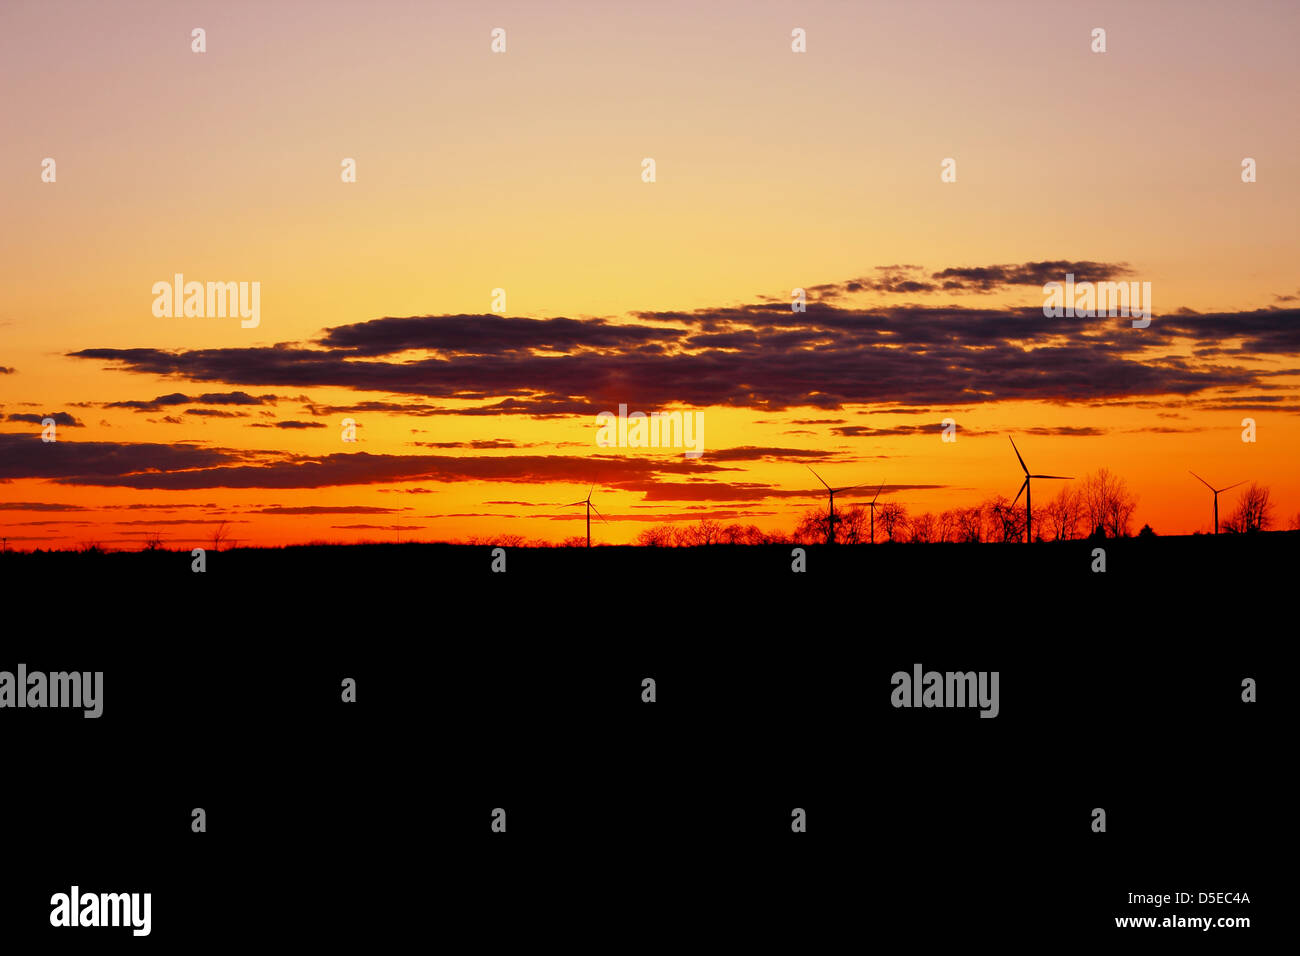 Splendido tramonto con sagome di turbine eoliche all'orizzonte. Deckerville, Michigan. Stati Uniti d'America. Foto Stock